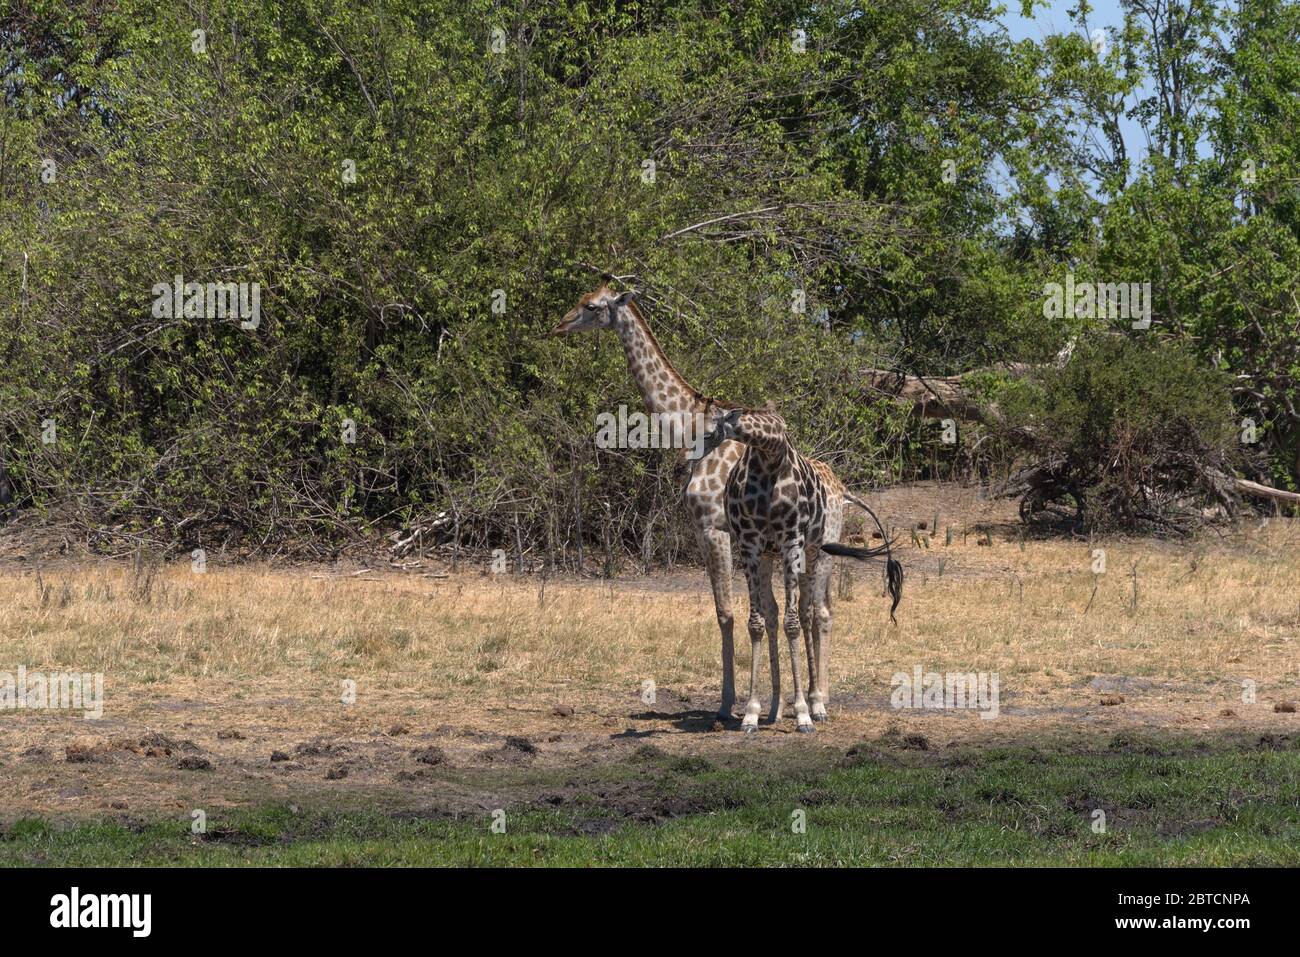 Girafe en saison sèche dans le delta de l'Okavango, Botswana Banque D'Images